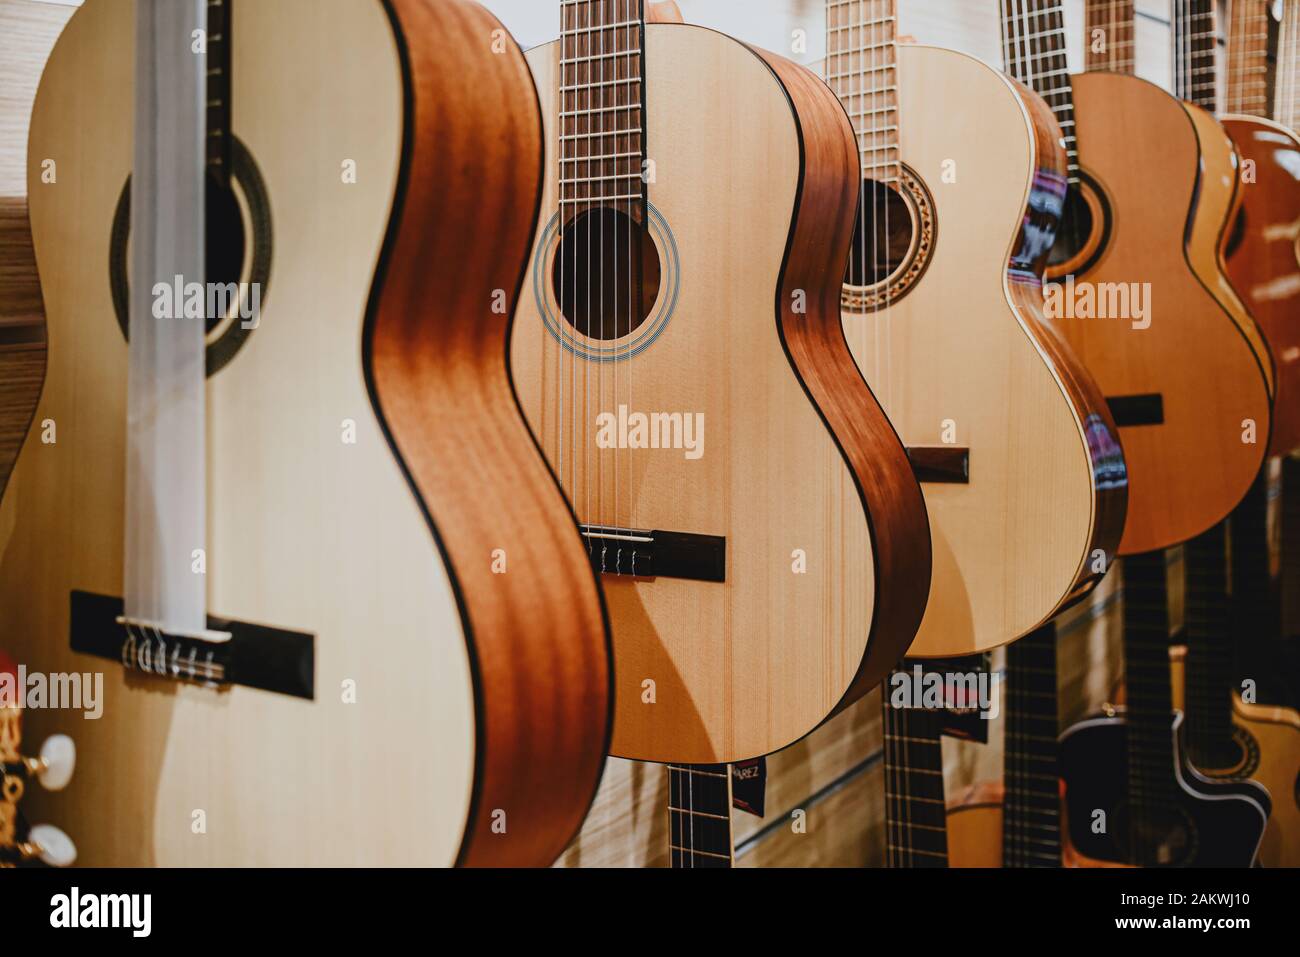 le chitarre dei banner vengono visualizzate in una riga di un brano musicale negozio Foto Stock